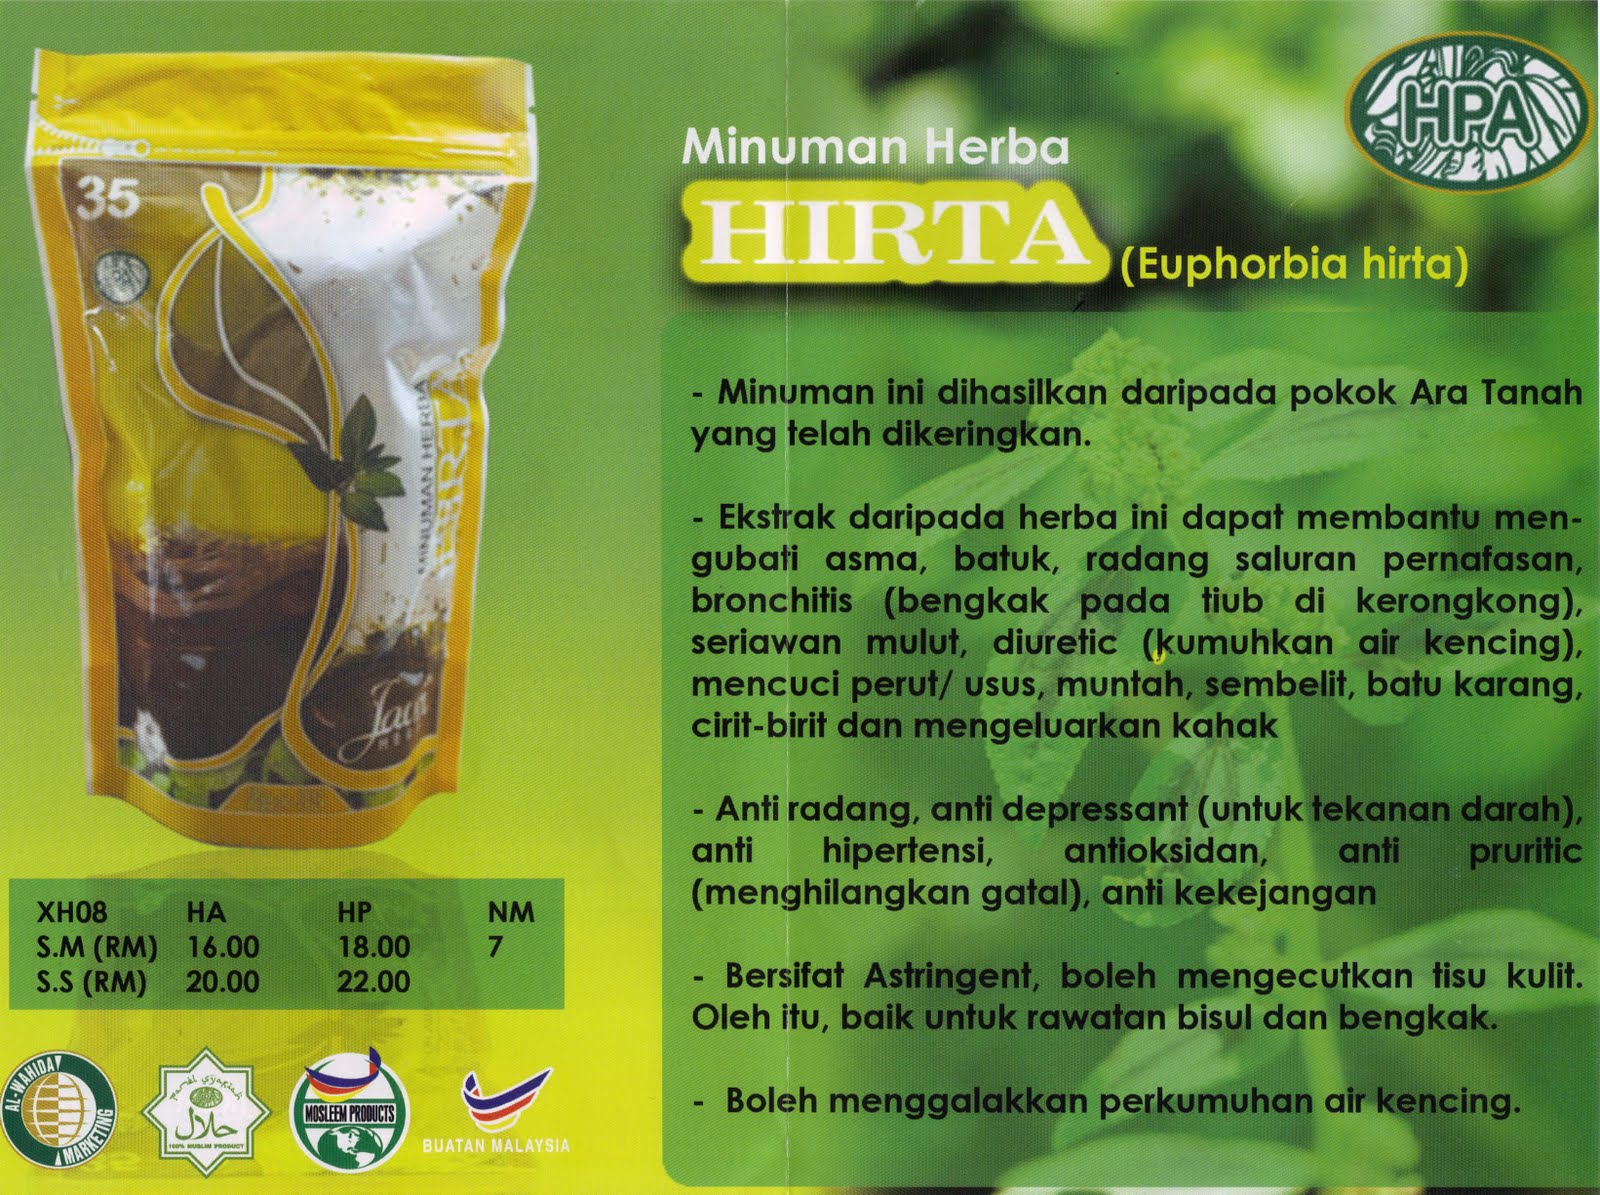 JAMALUDDIN YEOP MAJLIS: Minuman Herba HIRTA (Pokok Ara Tanah)